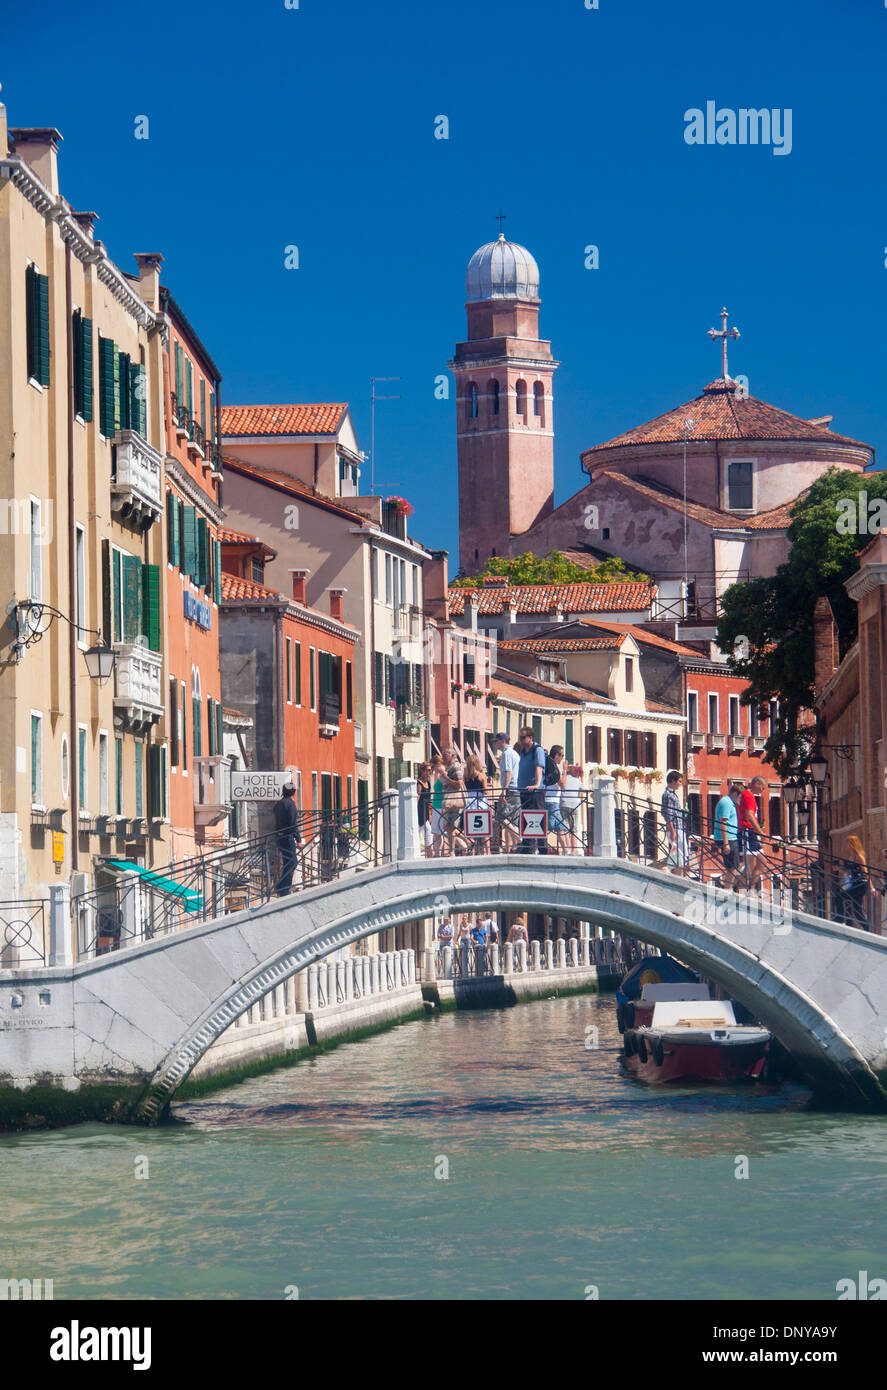 San Nicolo da Tolentino church with canal and people tourists crossing bridge Santa Croce sestier Venice Veneto Italy Stock Photo